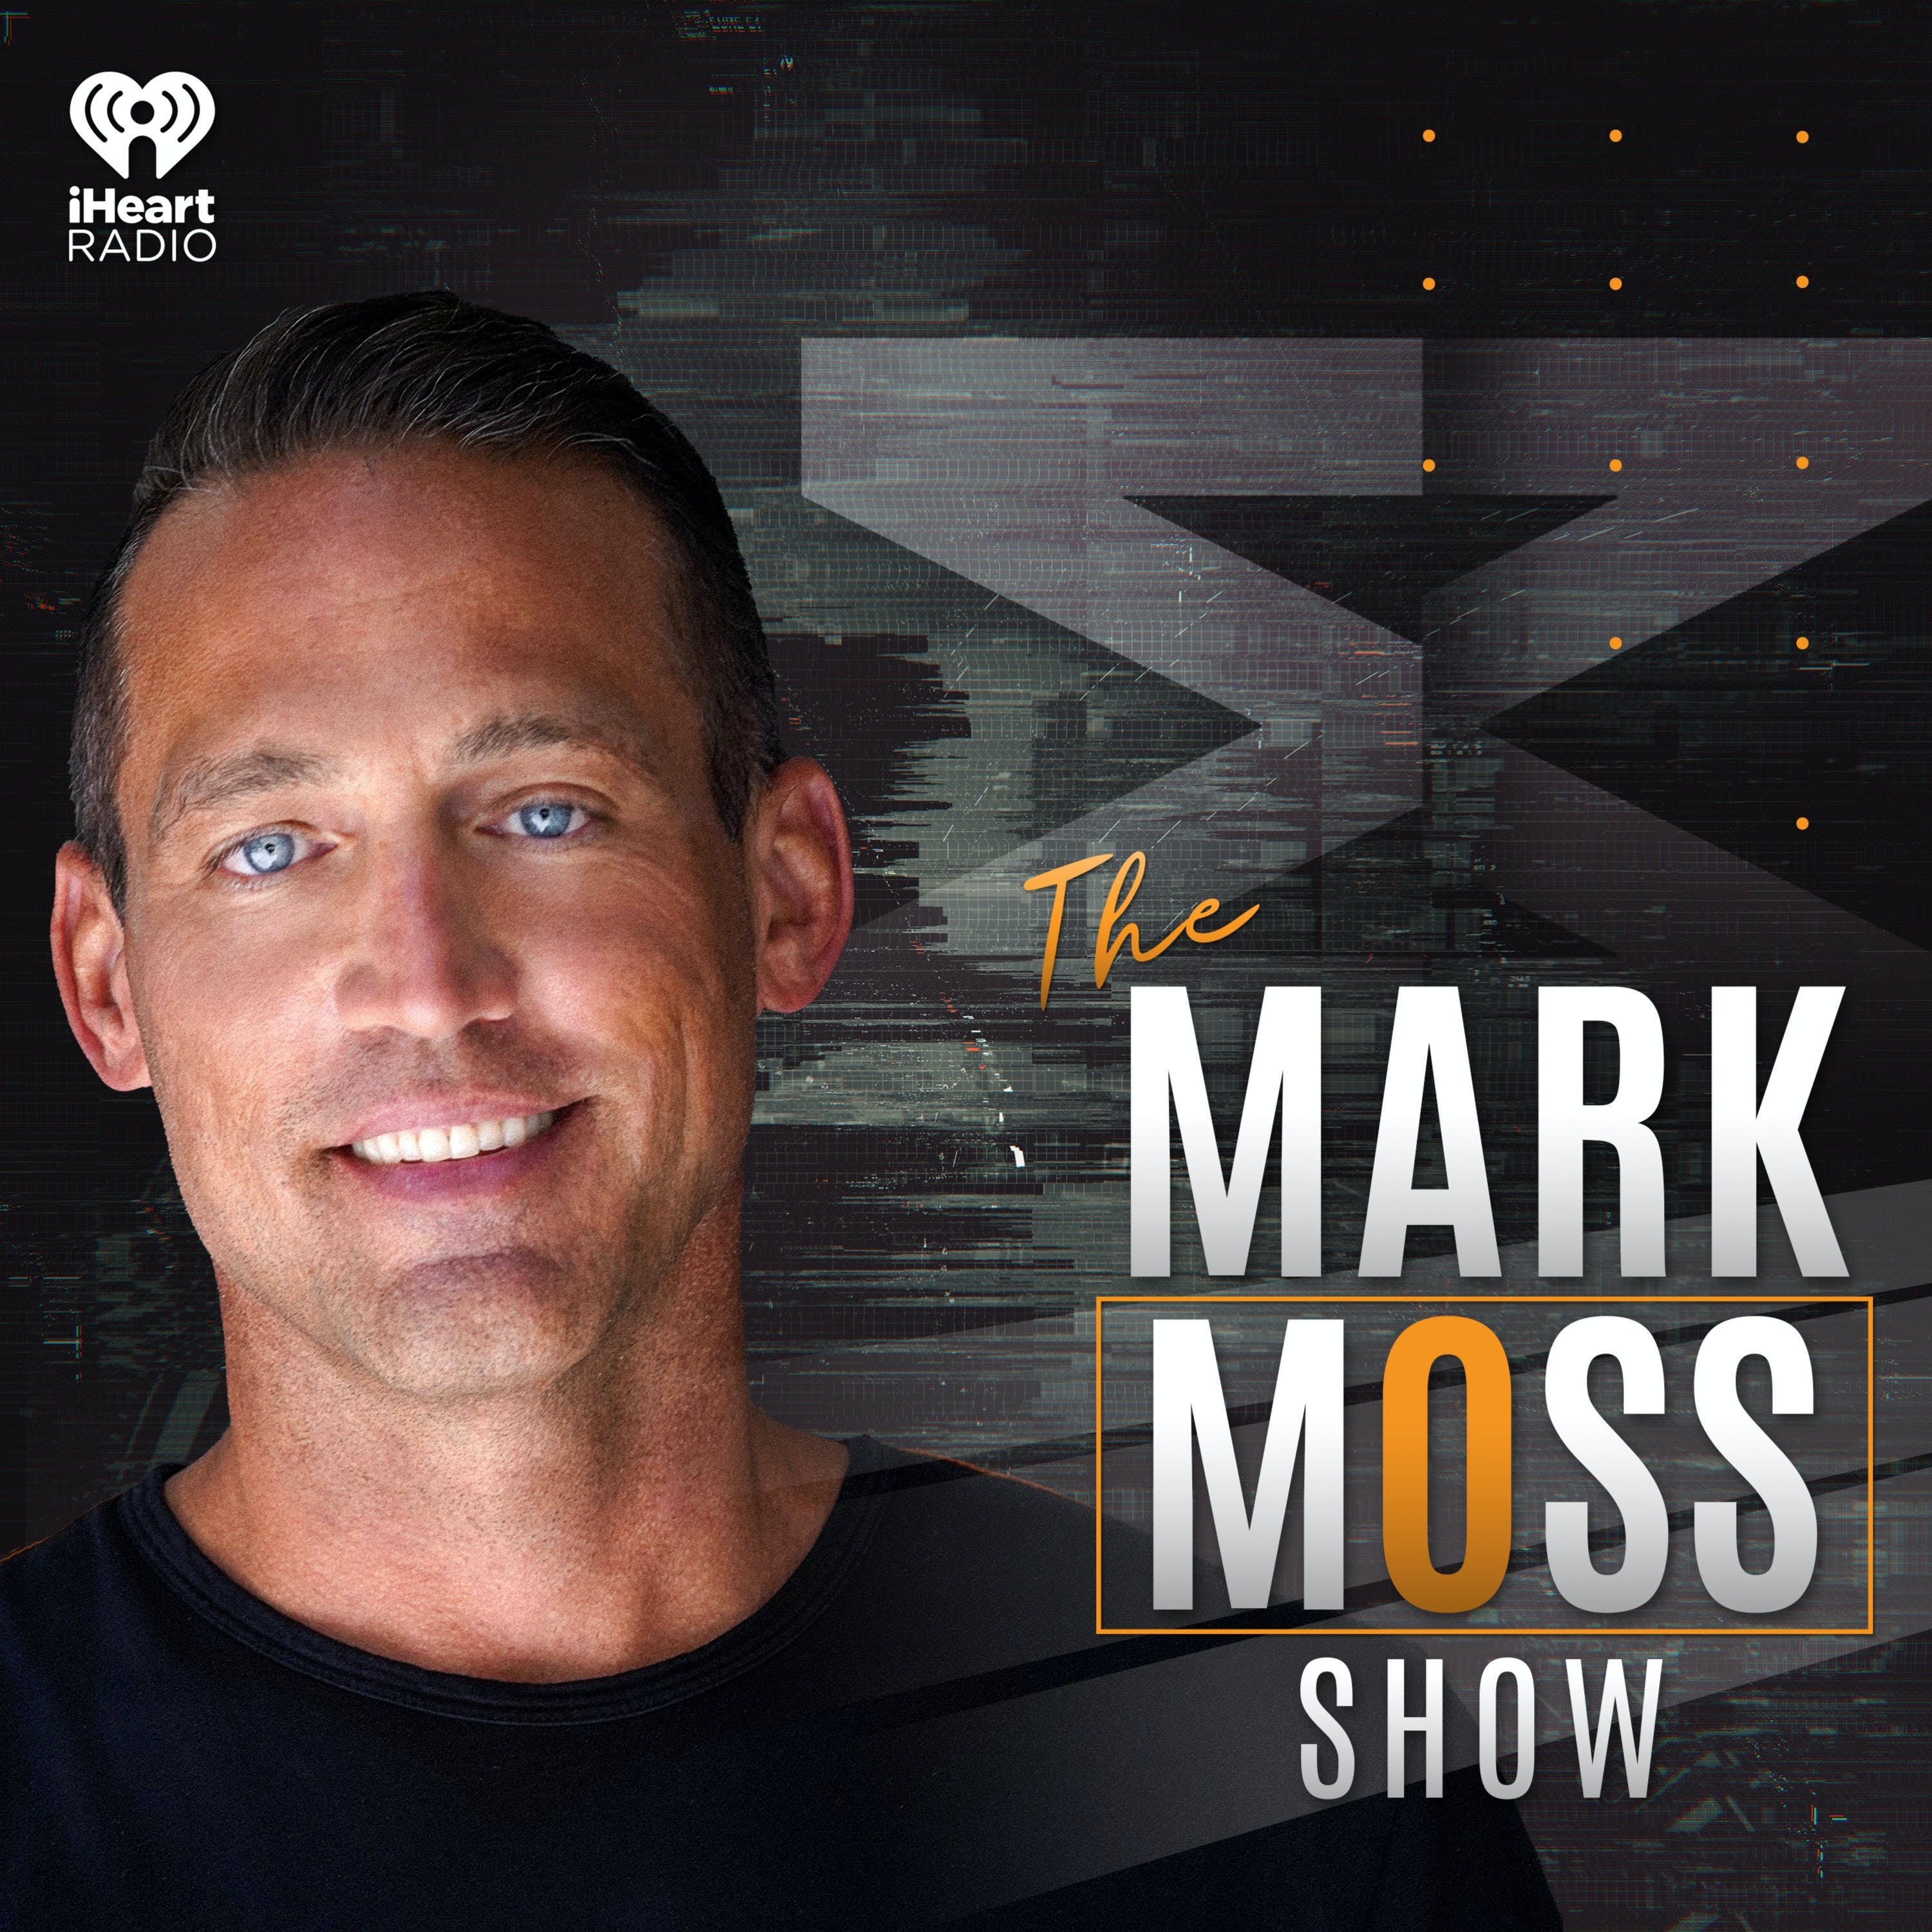 The Mark Moss Show Oct 13, 2021